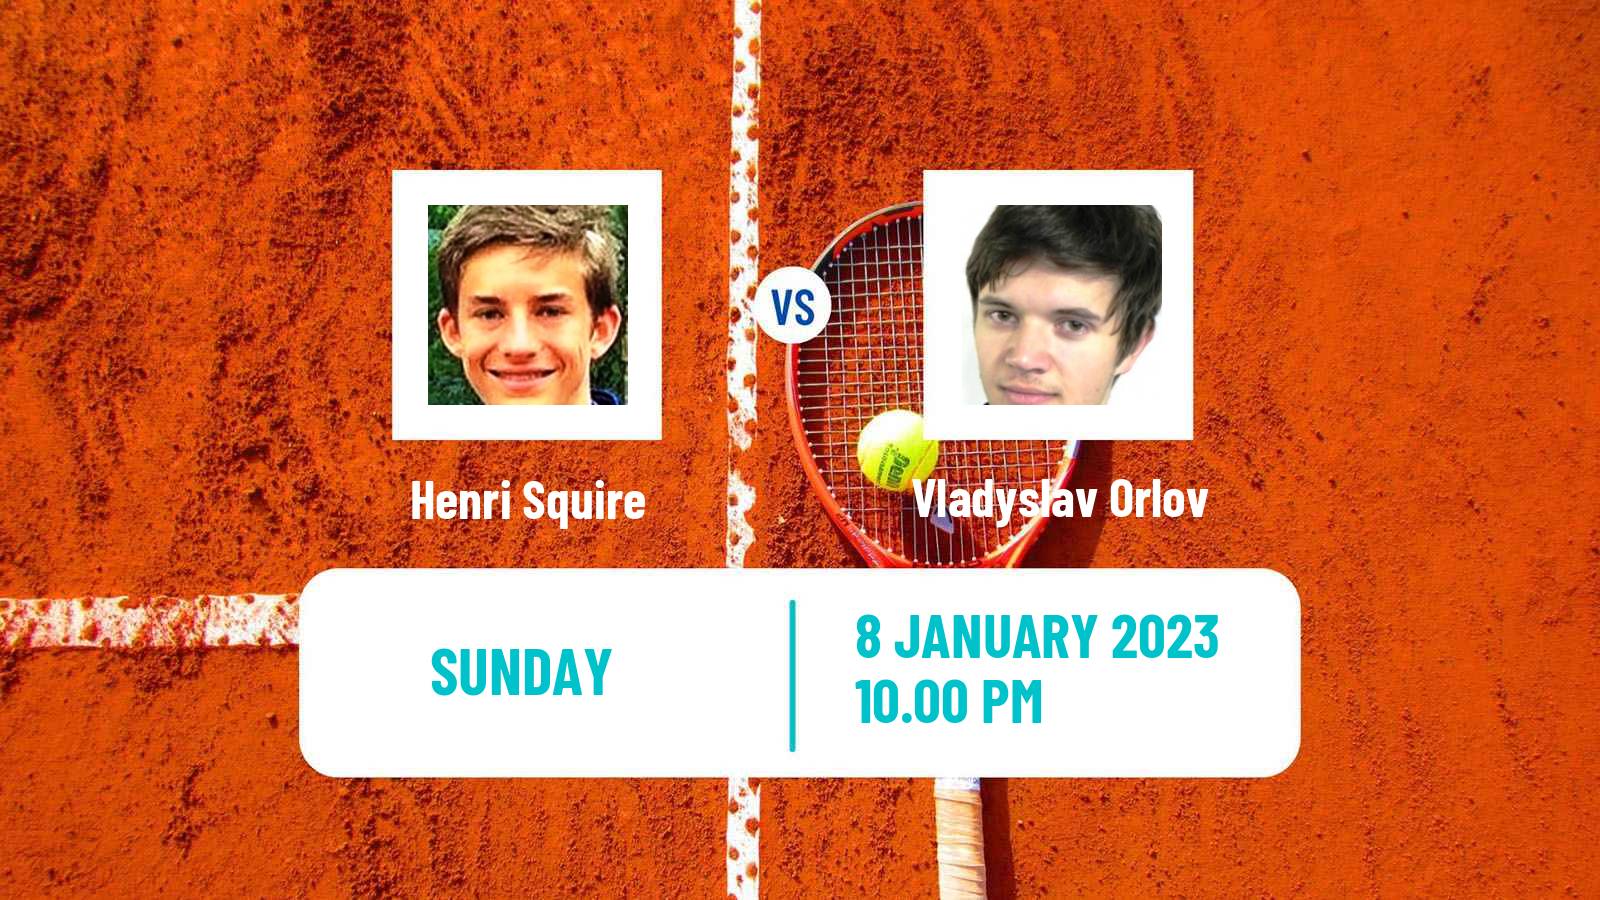 Tennis ATP Challenger Henri Squire - Vladyslav Orlov